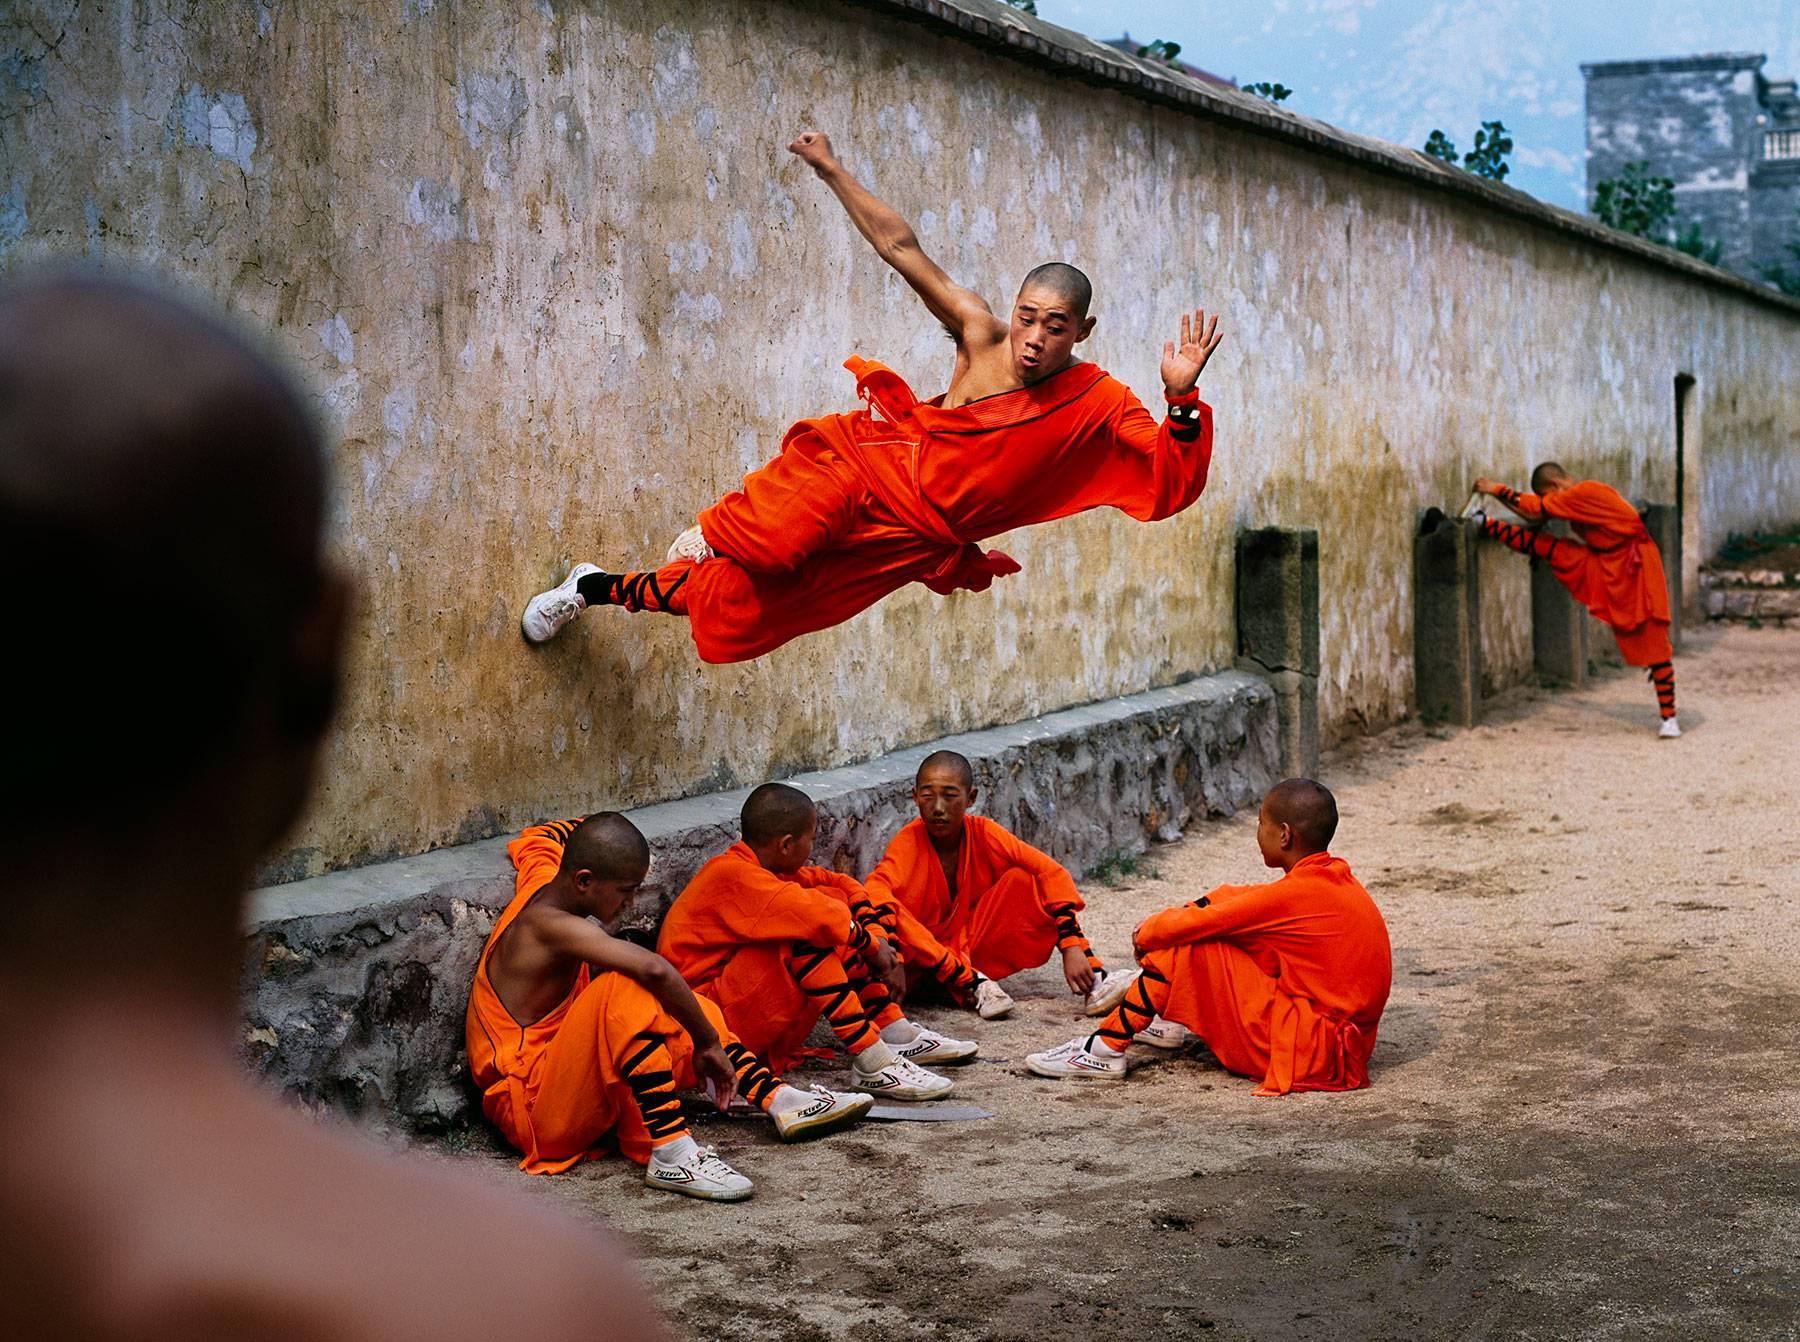 Steve McCurry Color Photograph – Mönch läuft auf Mauer